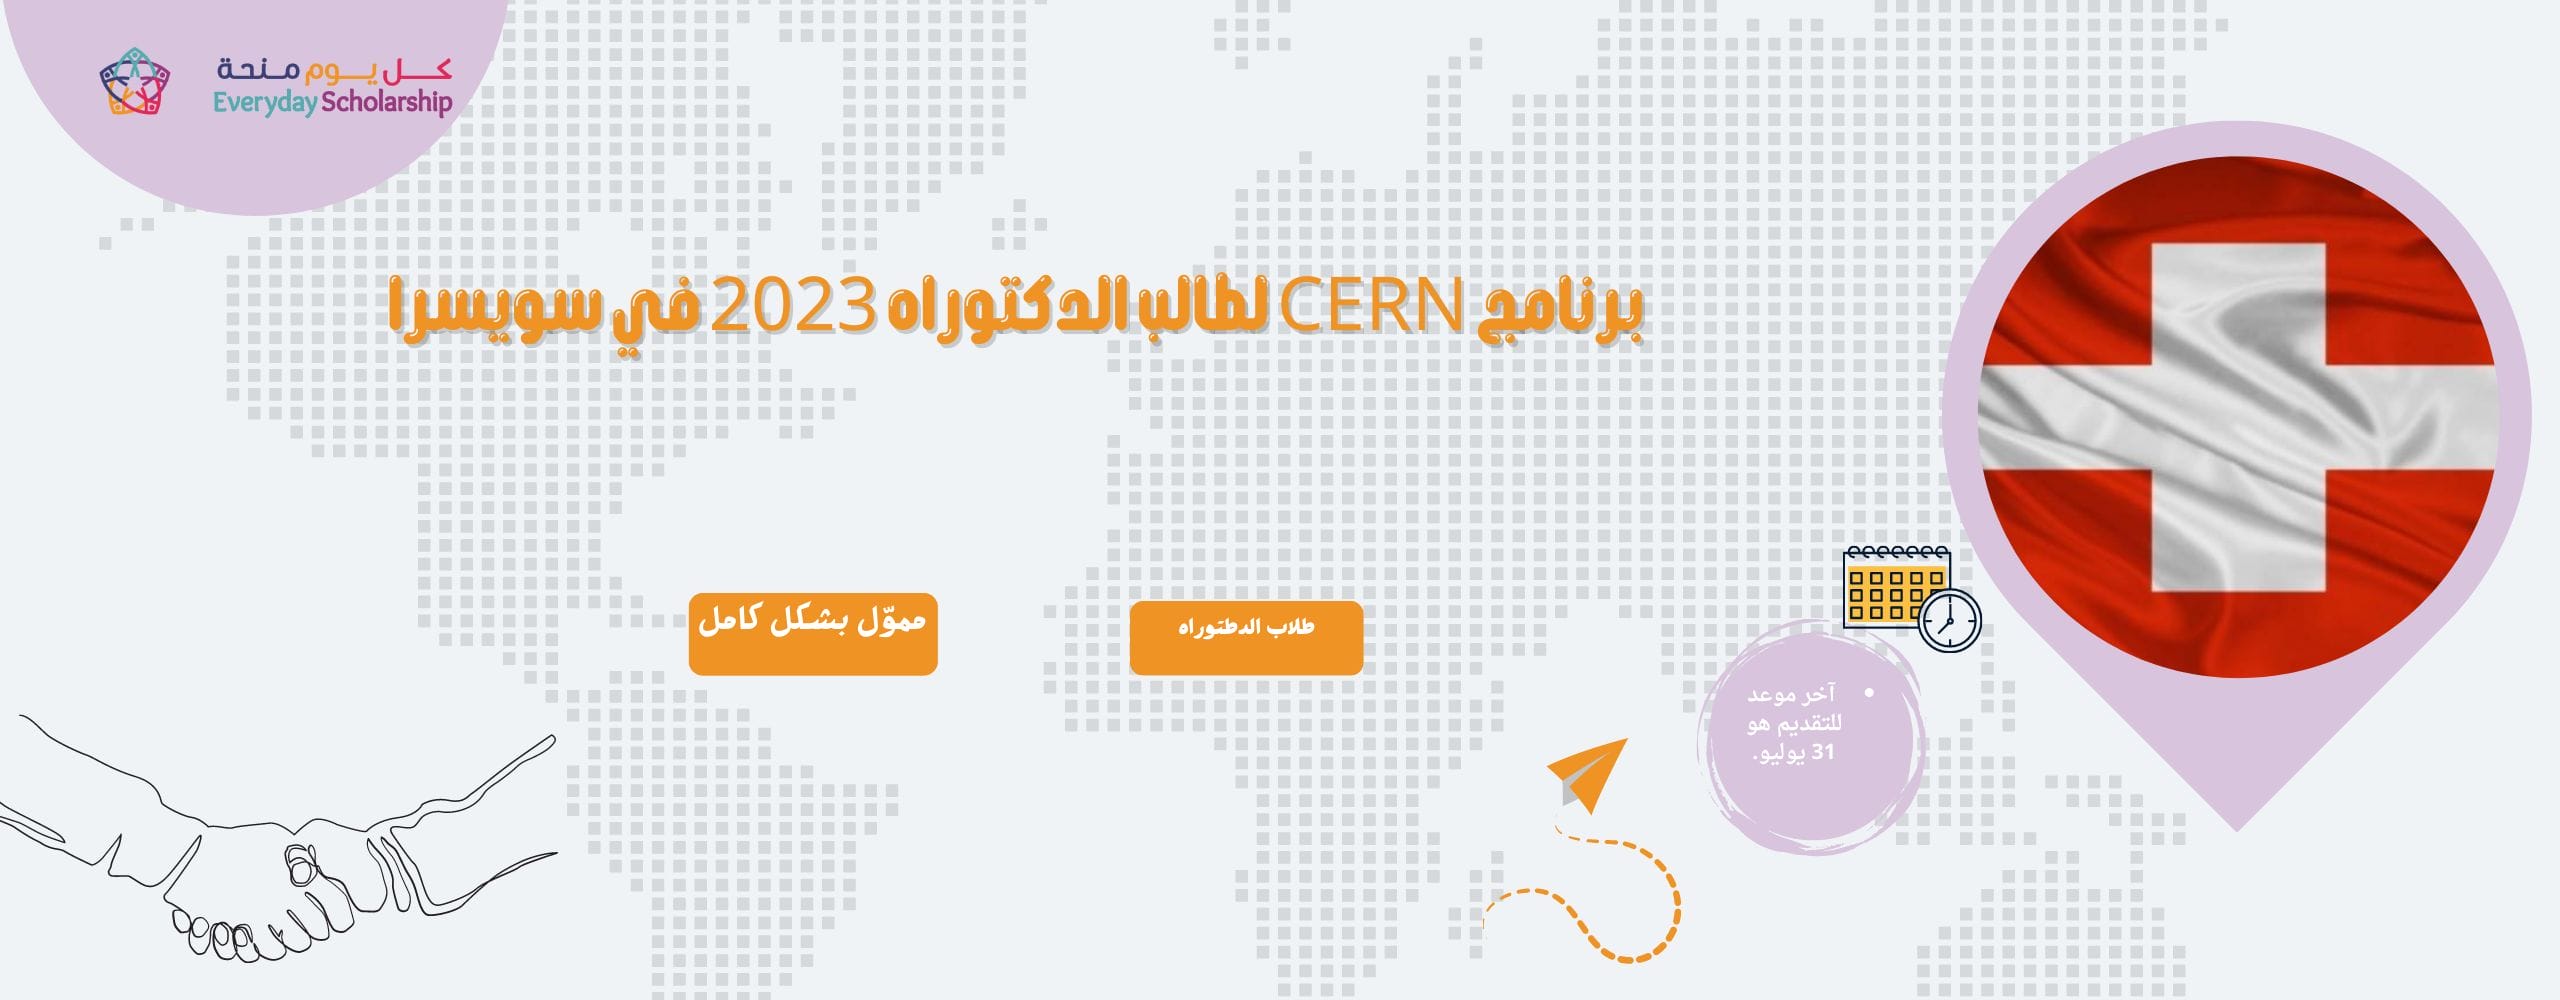 برنامج CERN لطالب الدكتوراه 2023 في سويسرا